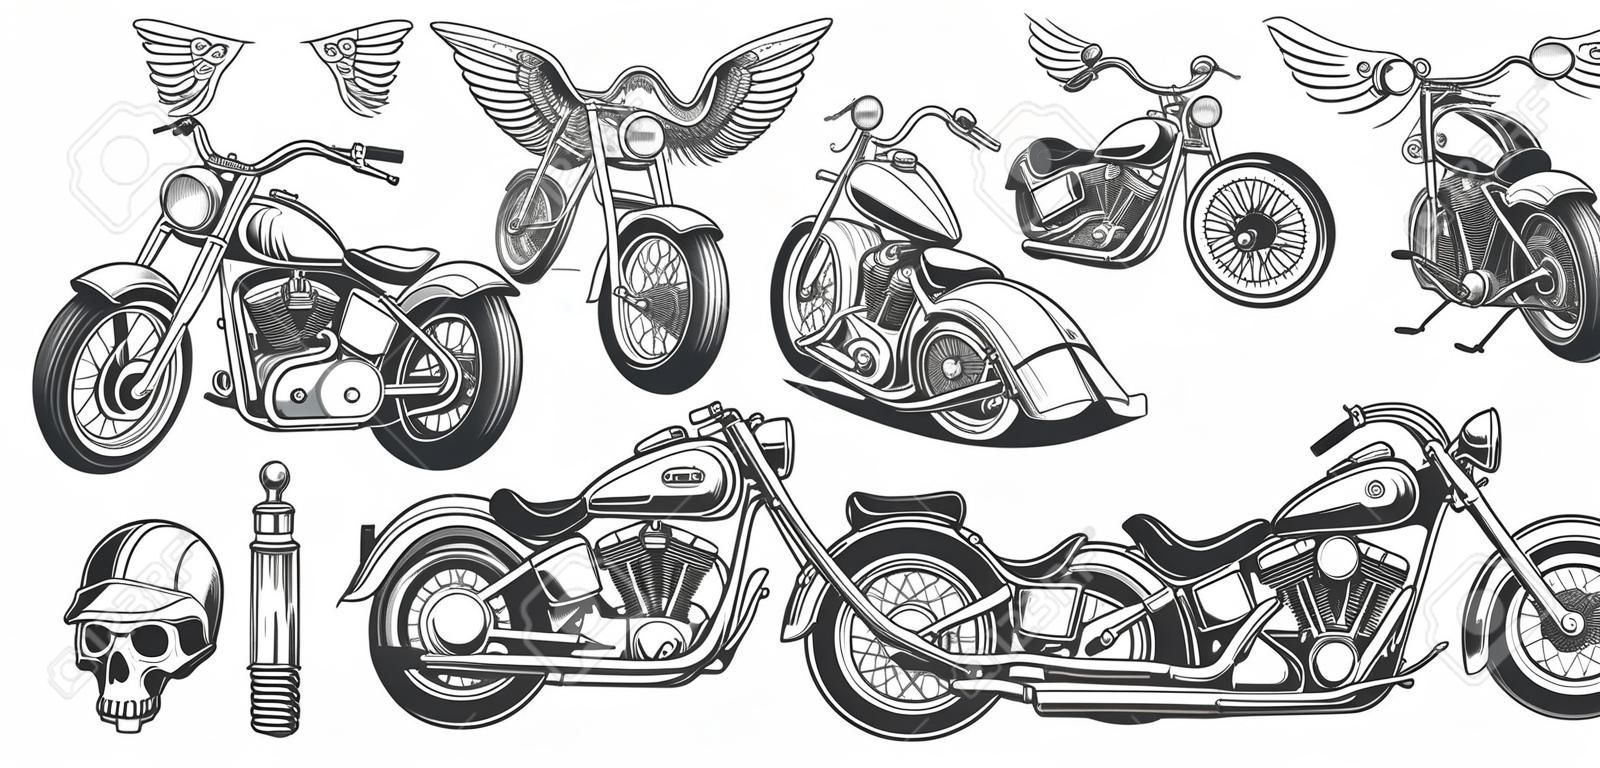 Zestaw ilustracji, ikony r? Cznie rysowane motocykla w ró? Nych k? Tach, czaszki, skrzyd? A w stylu grawerowania. Klasyczny chopper w stylu atramentowym. Drukowanie, grawerowanie, szablon, element projektu